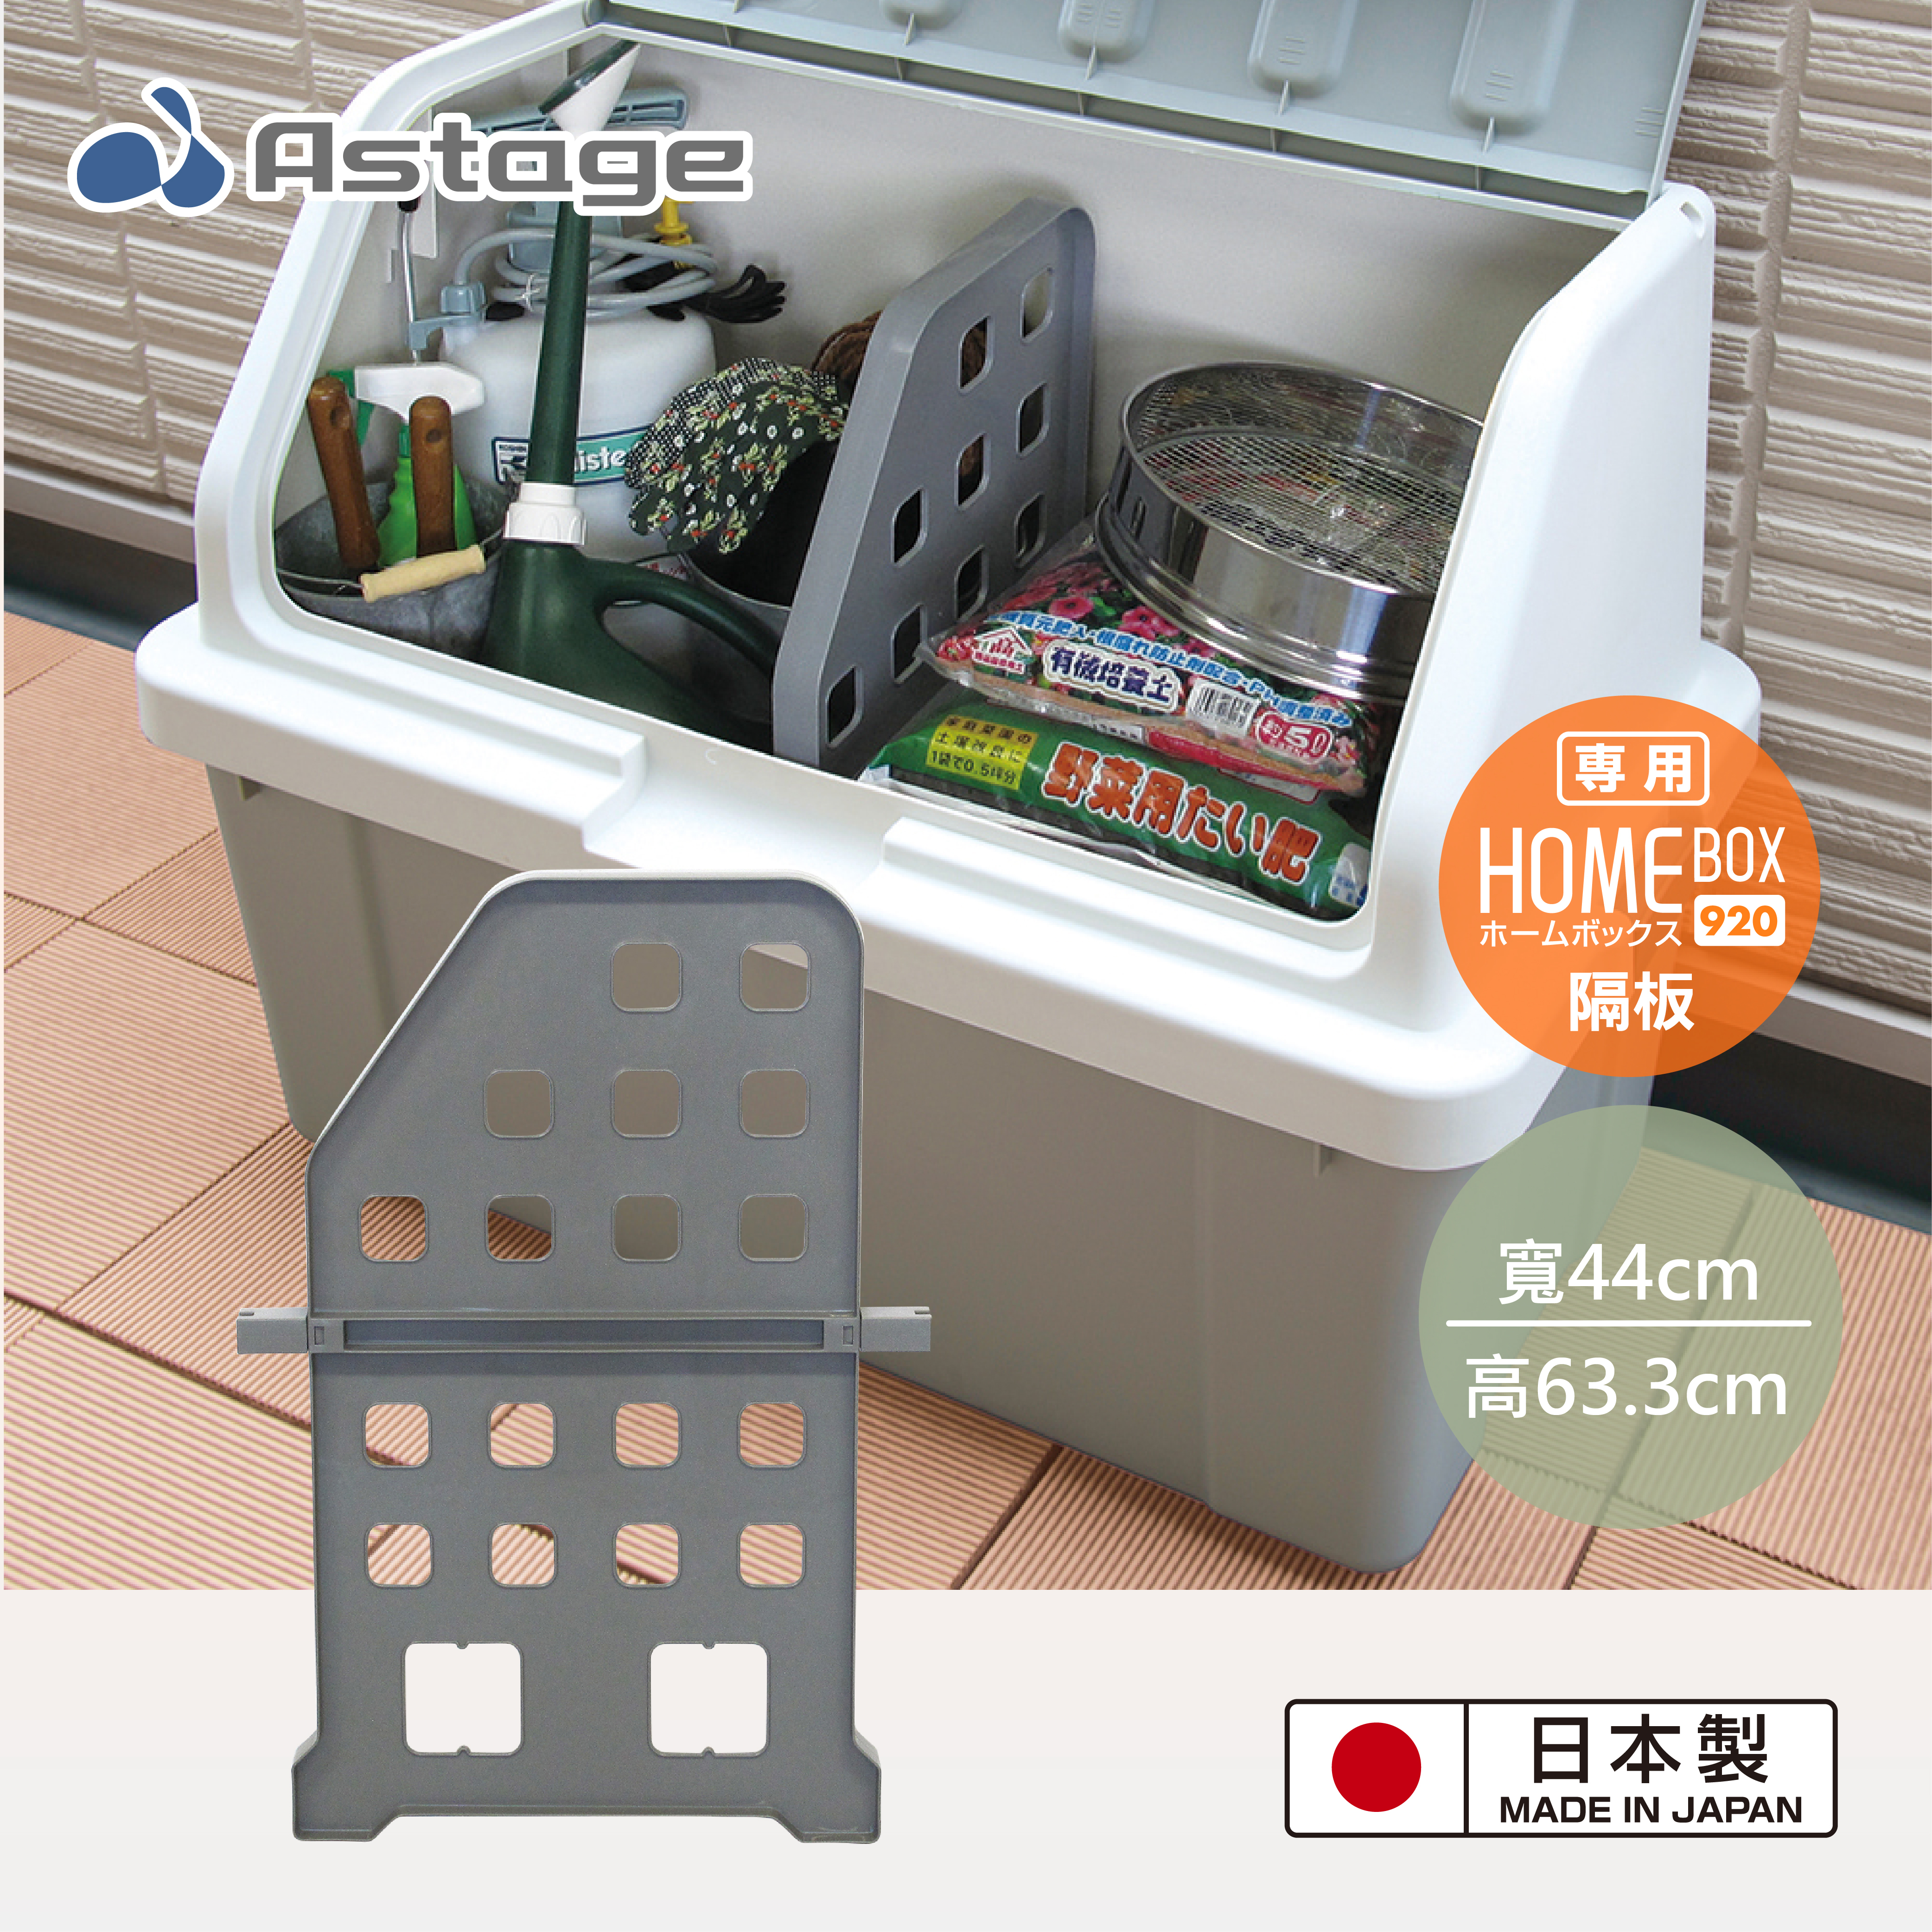 【日本JEJ ASTAGE】Home Box 920 超大型收納箱專用隔板(灰色)